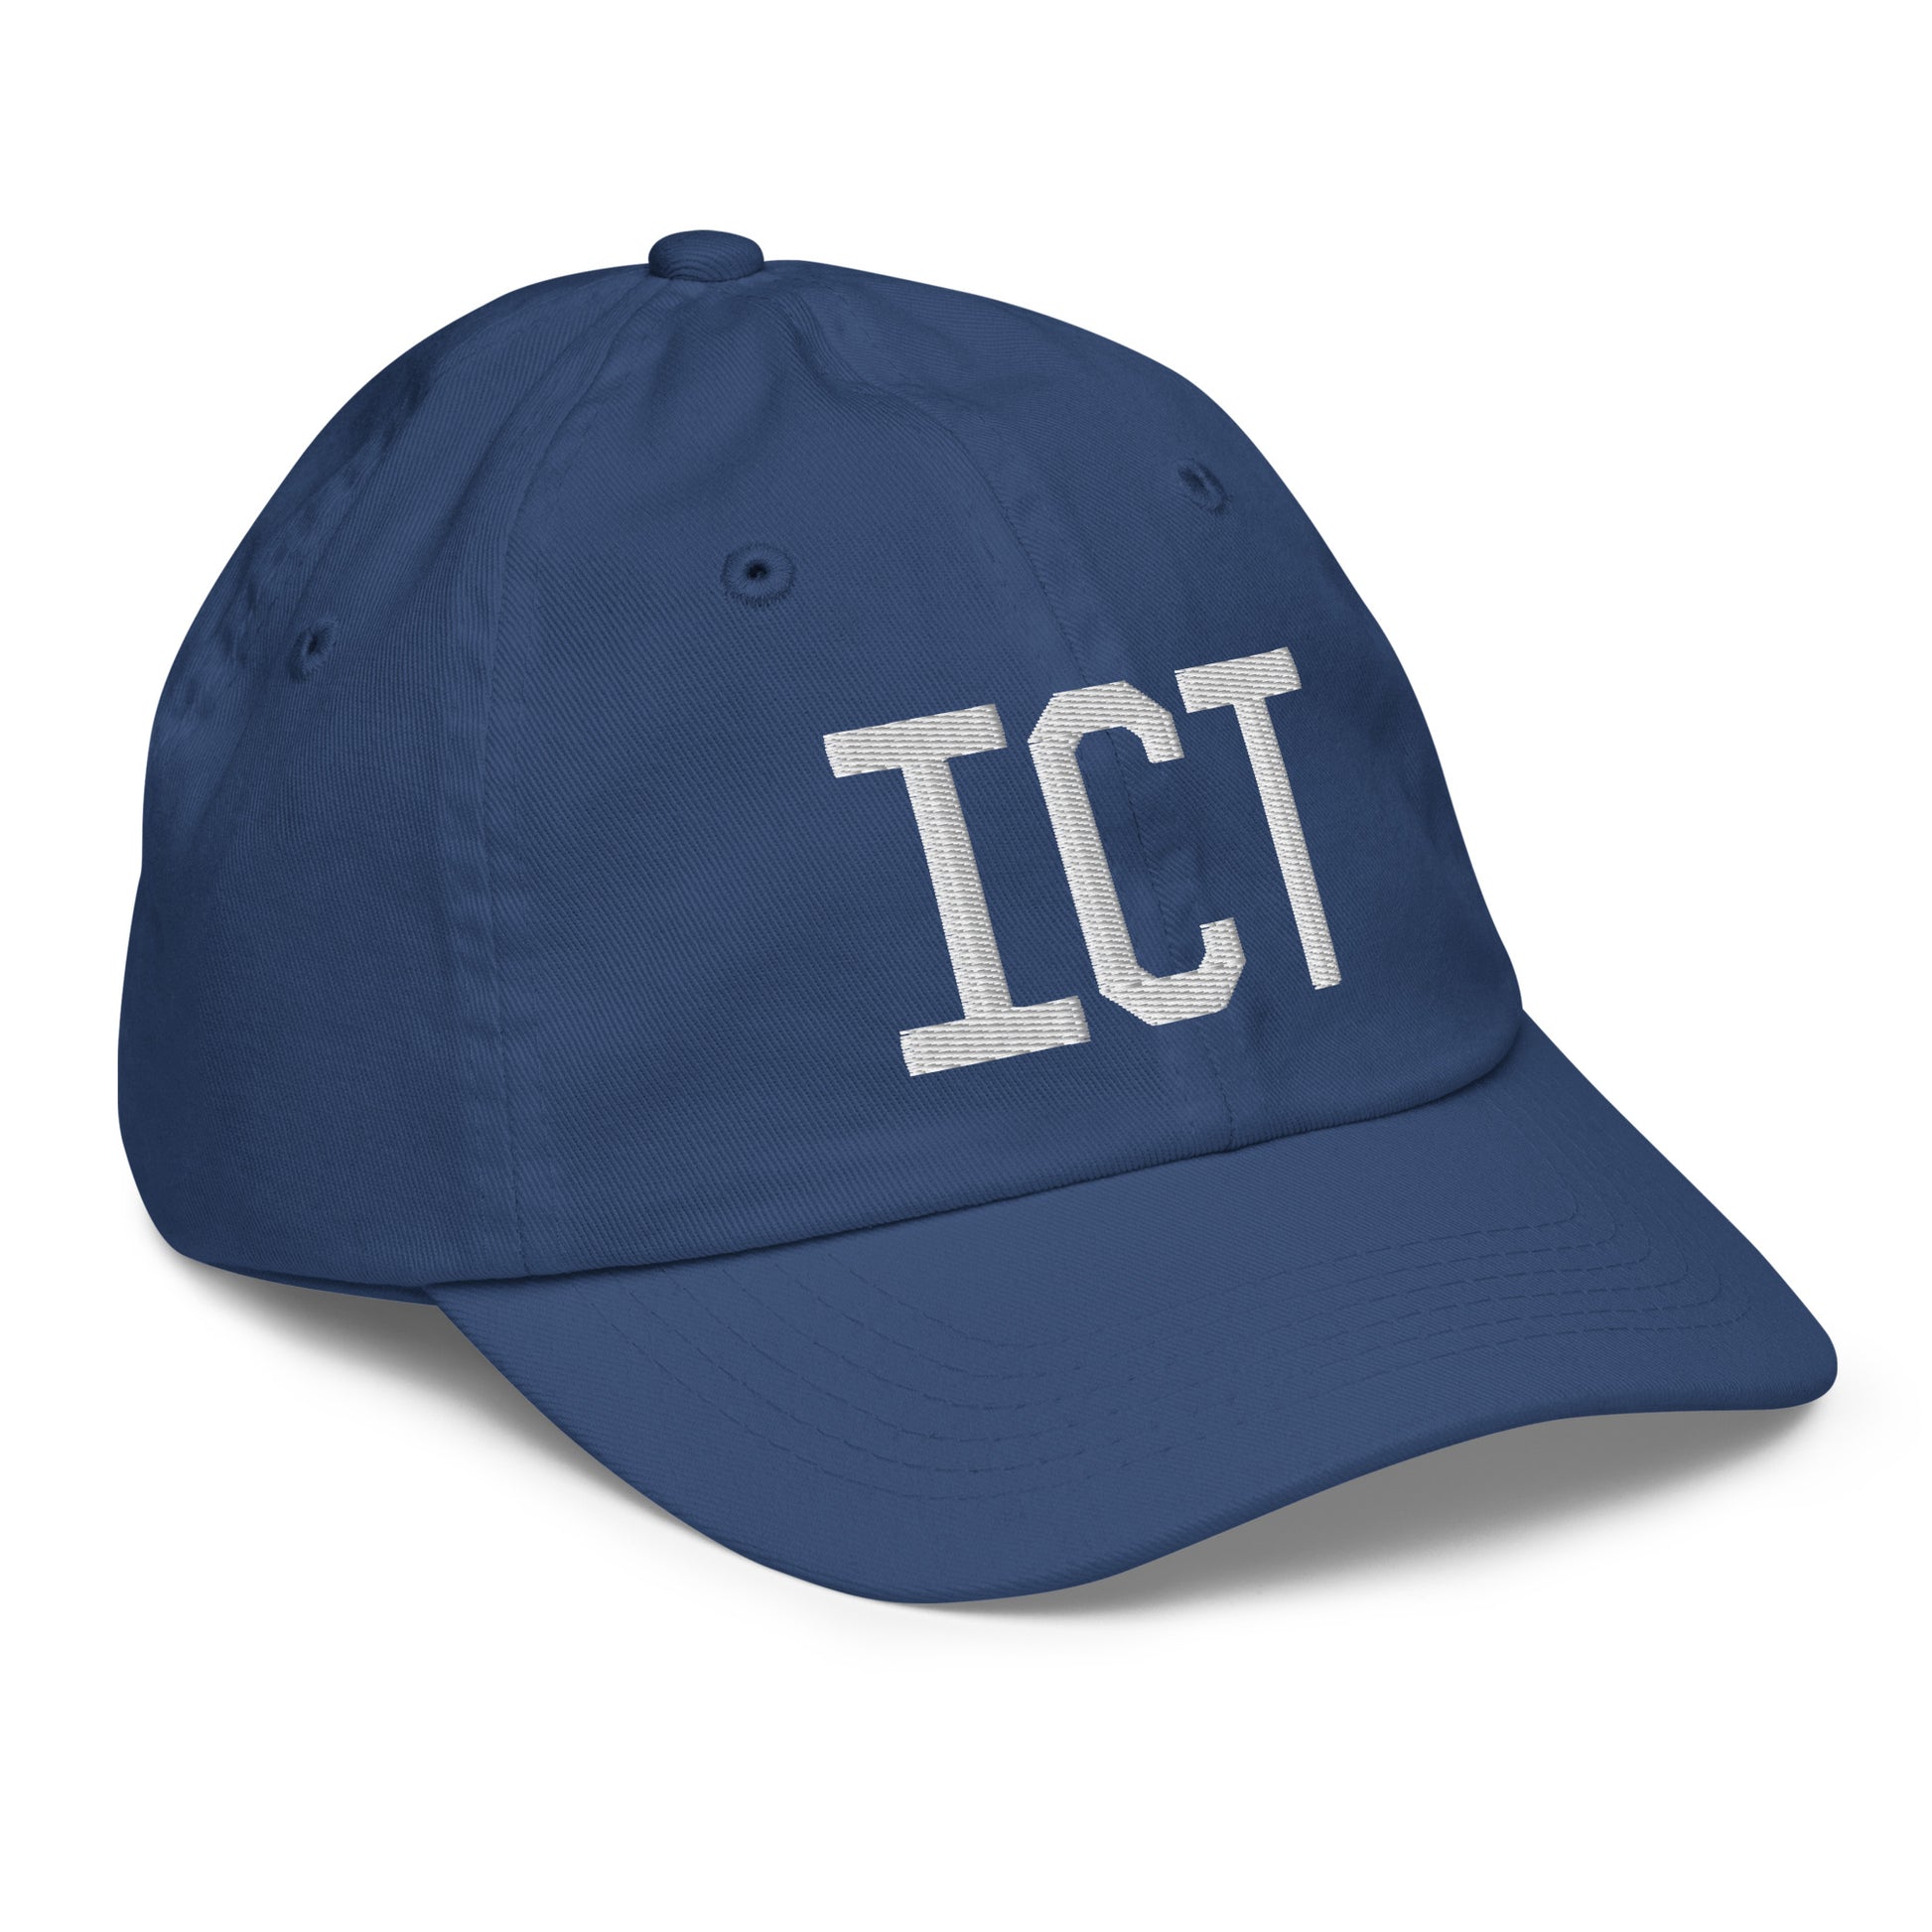 Airport Code Kid's Baseball Cap - White • ICT Wichita • YHM Designs - Image 21